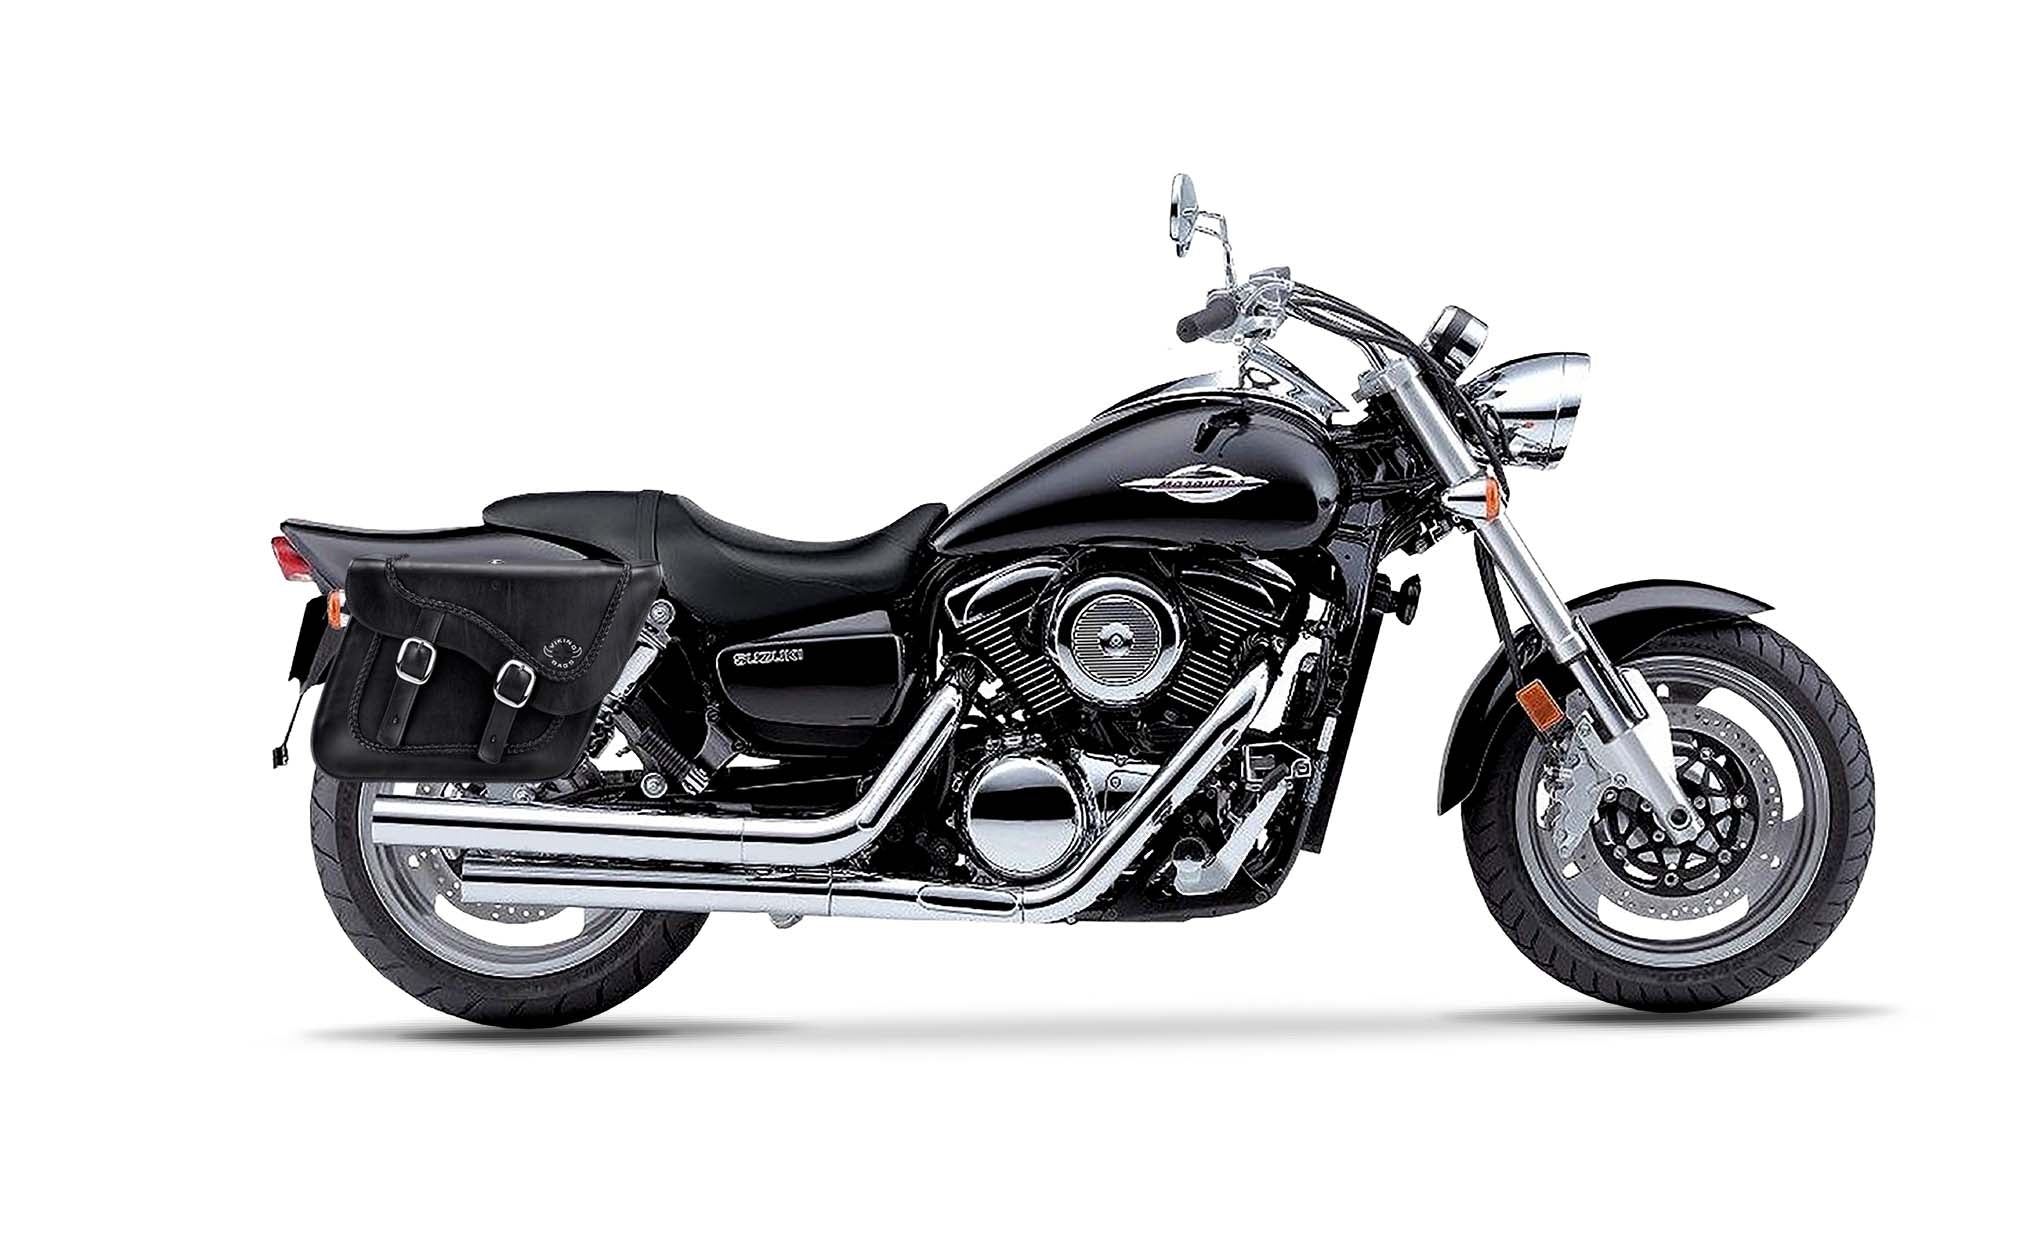 Viking Americano Suzuki Boulevard M95 Vz1600 Braided Large Leather Motorcycle Saddlebags on Bike Photo @expand